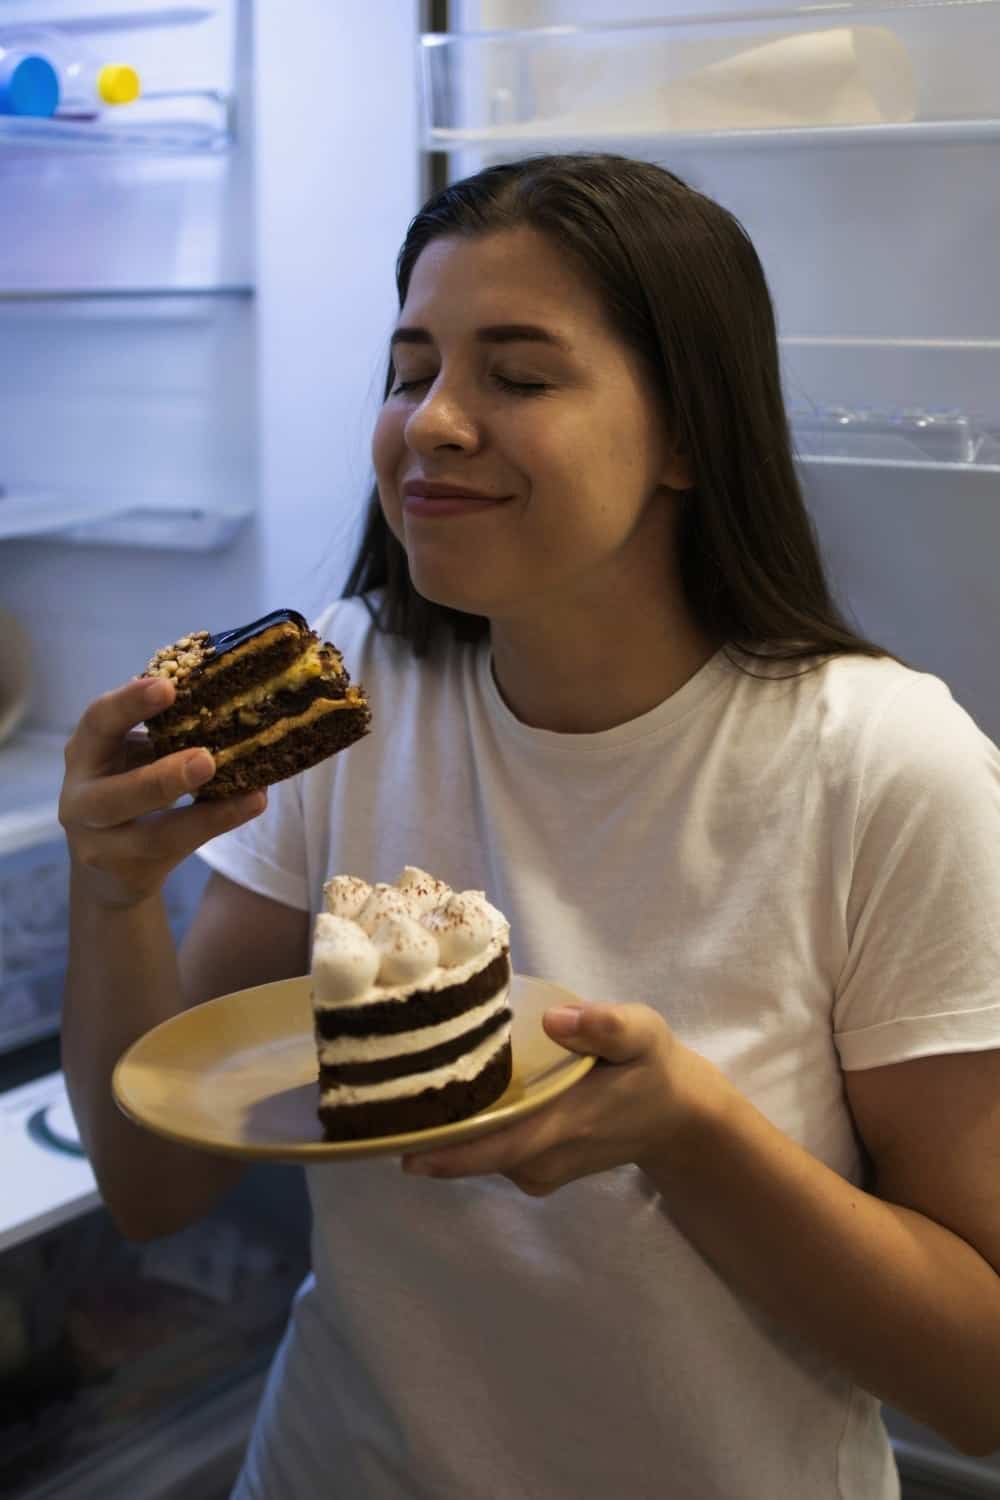 girl eating a cake from fridge